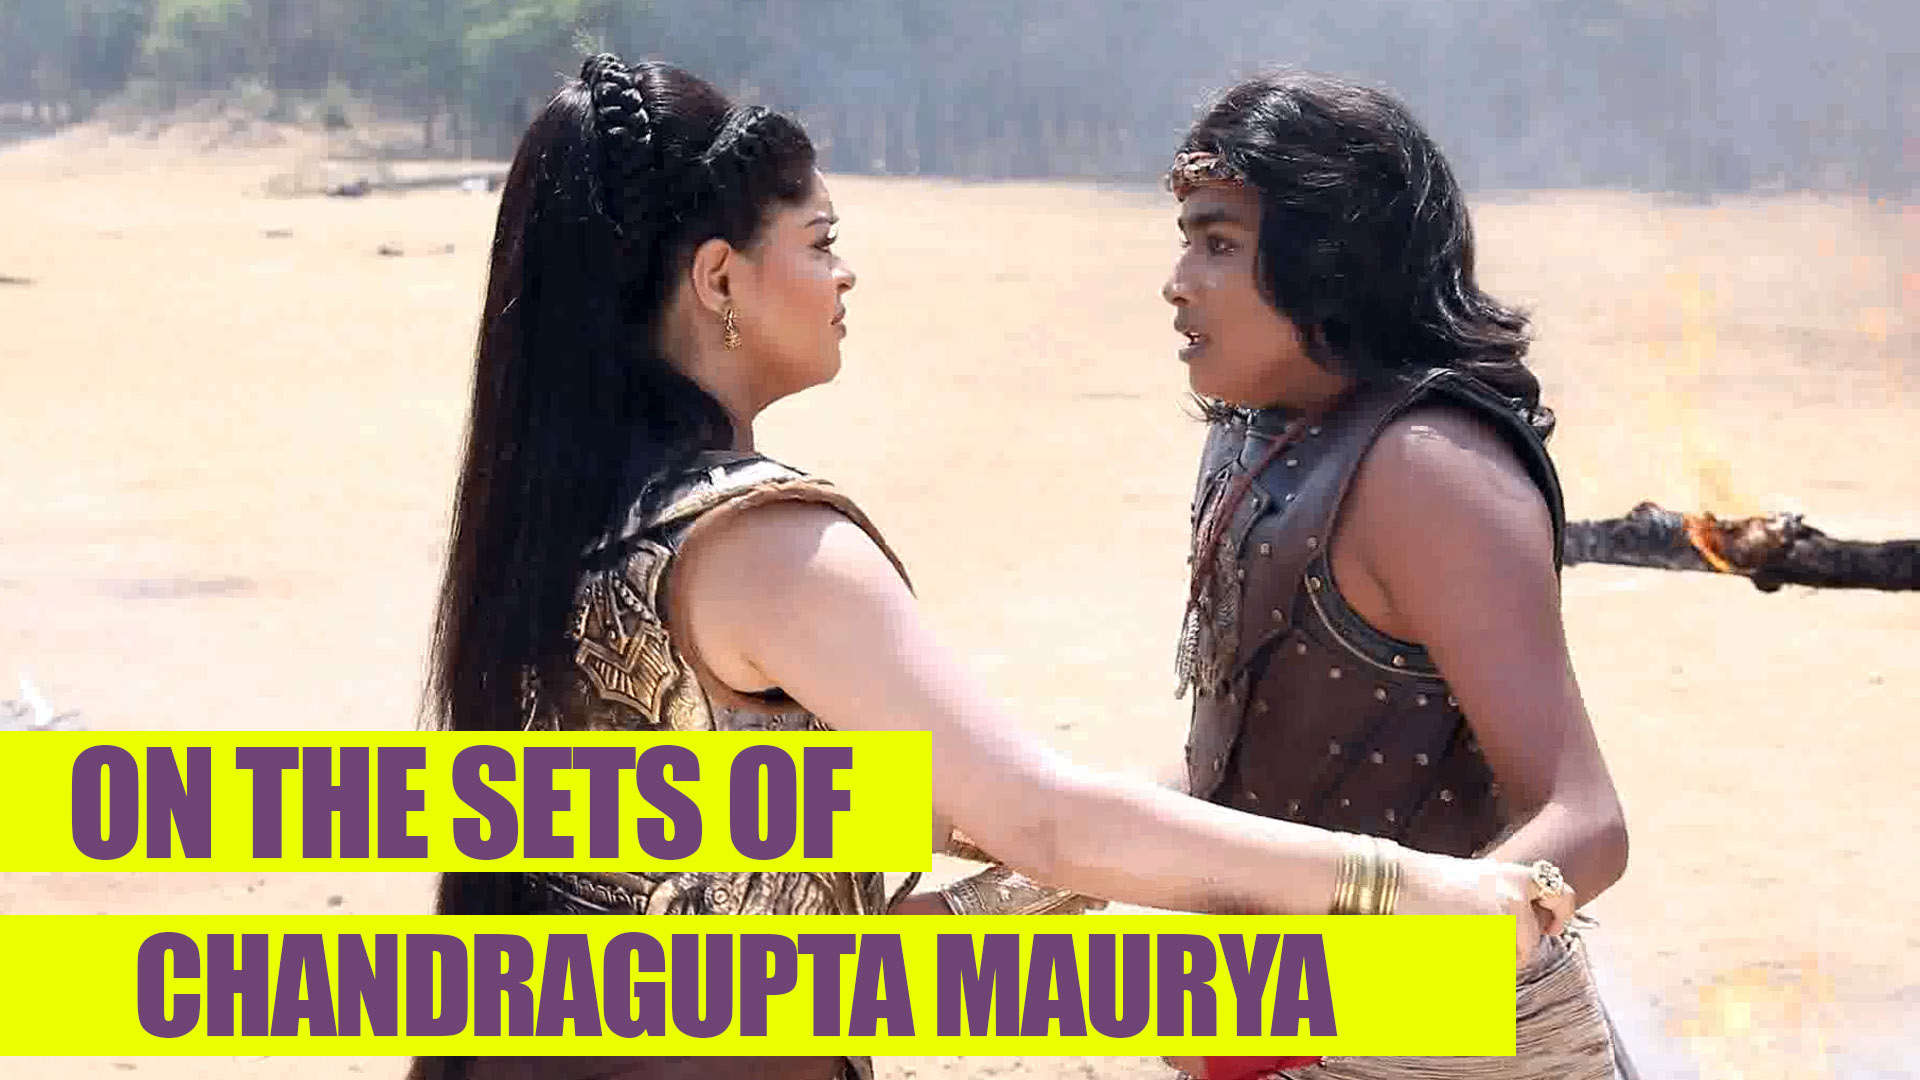 story of chandragupta maurya serial